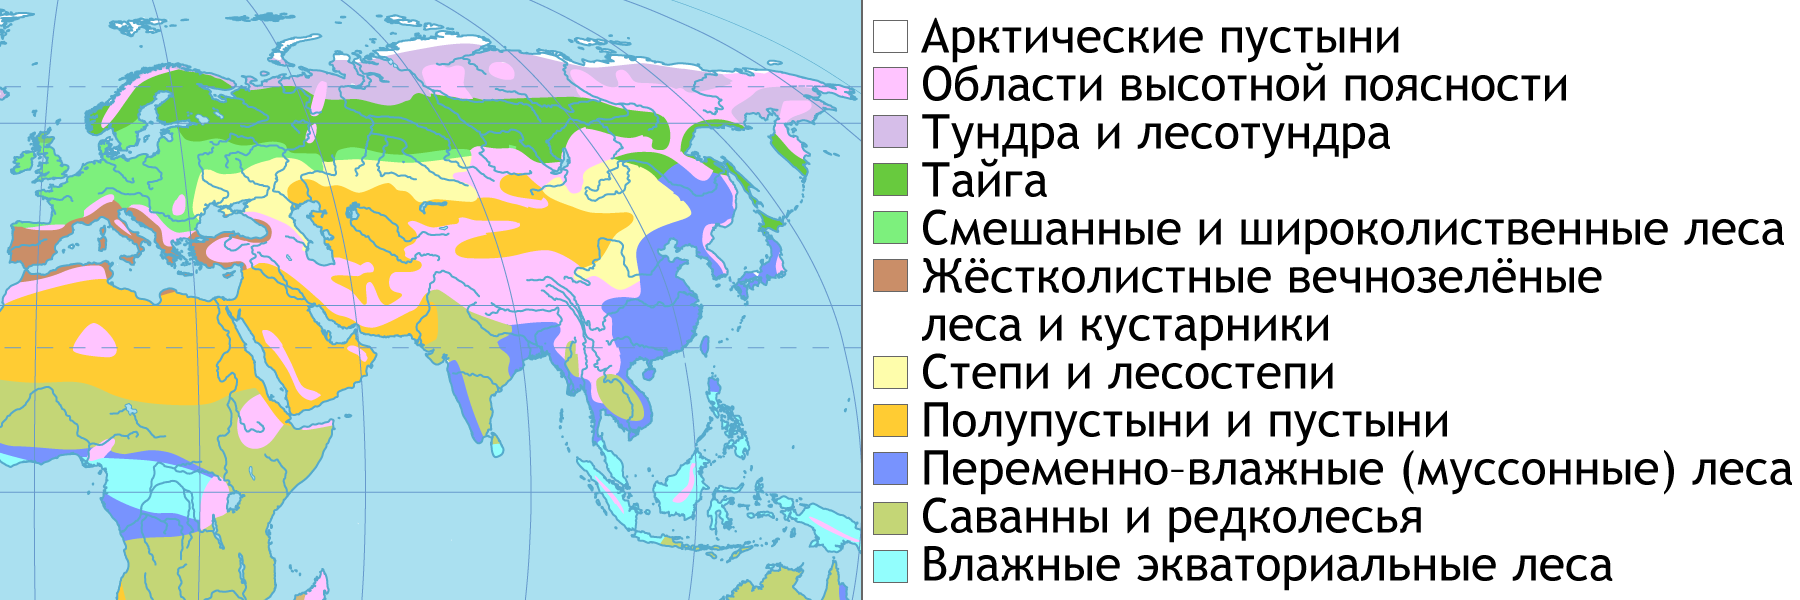 Природные зоны евразии